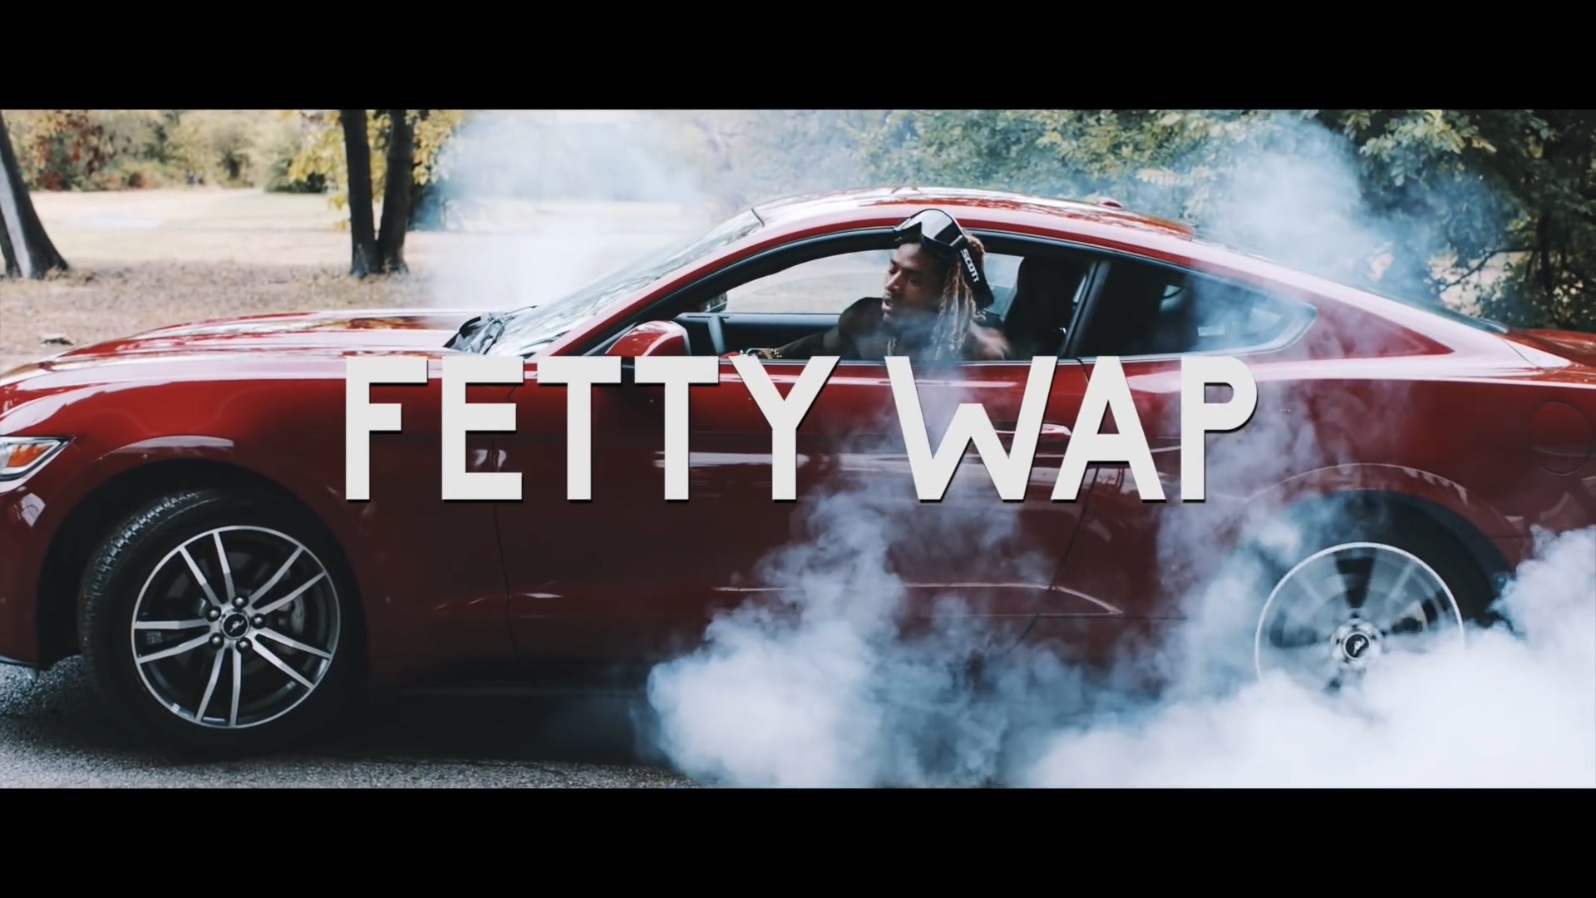 Fetty Wap feat. Monty - My Way - 